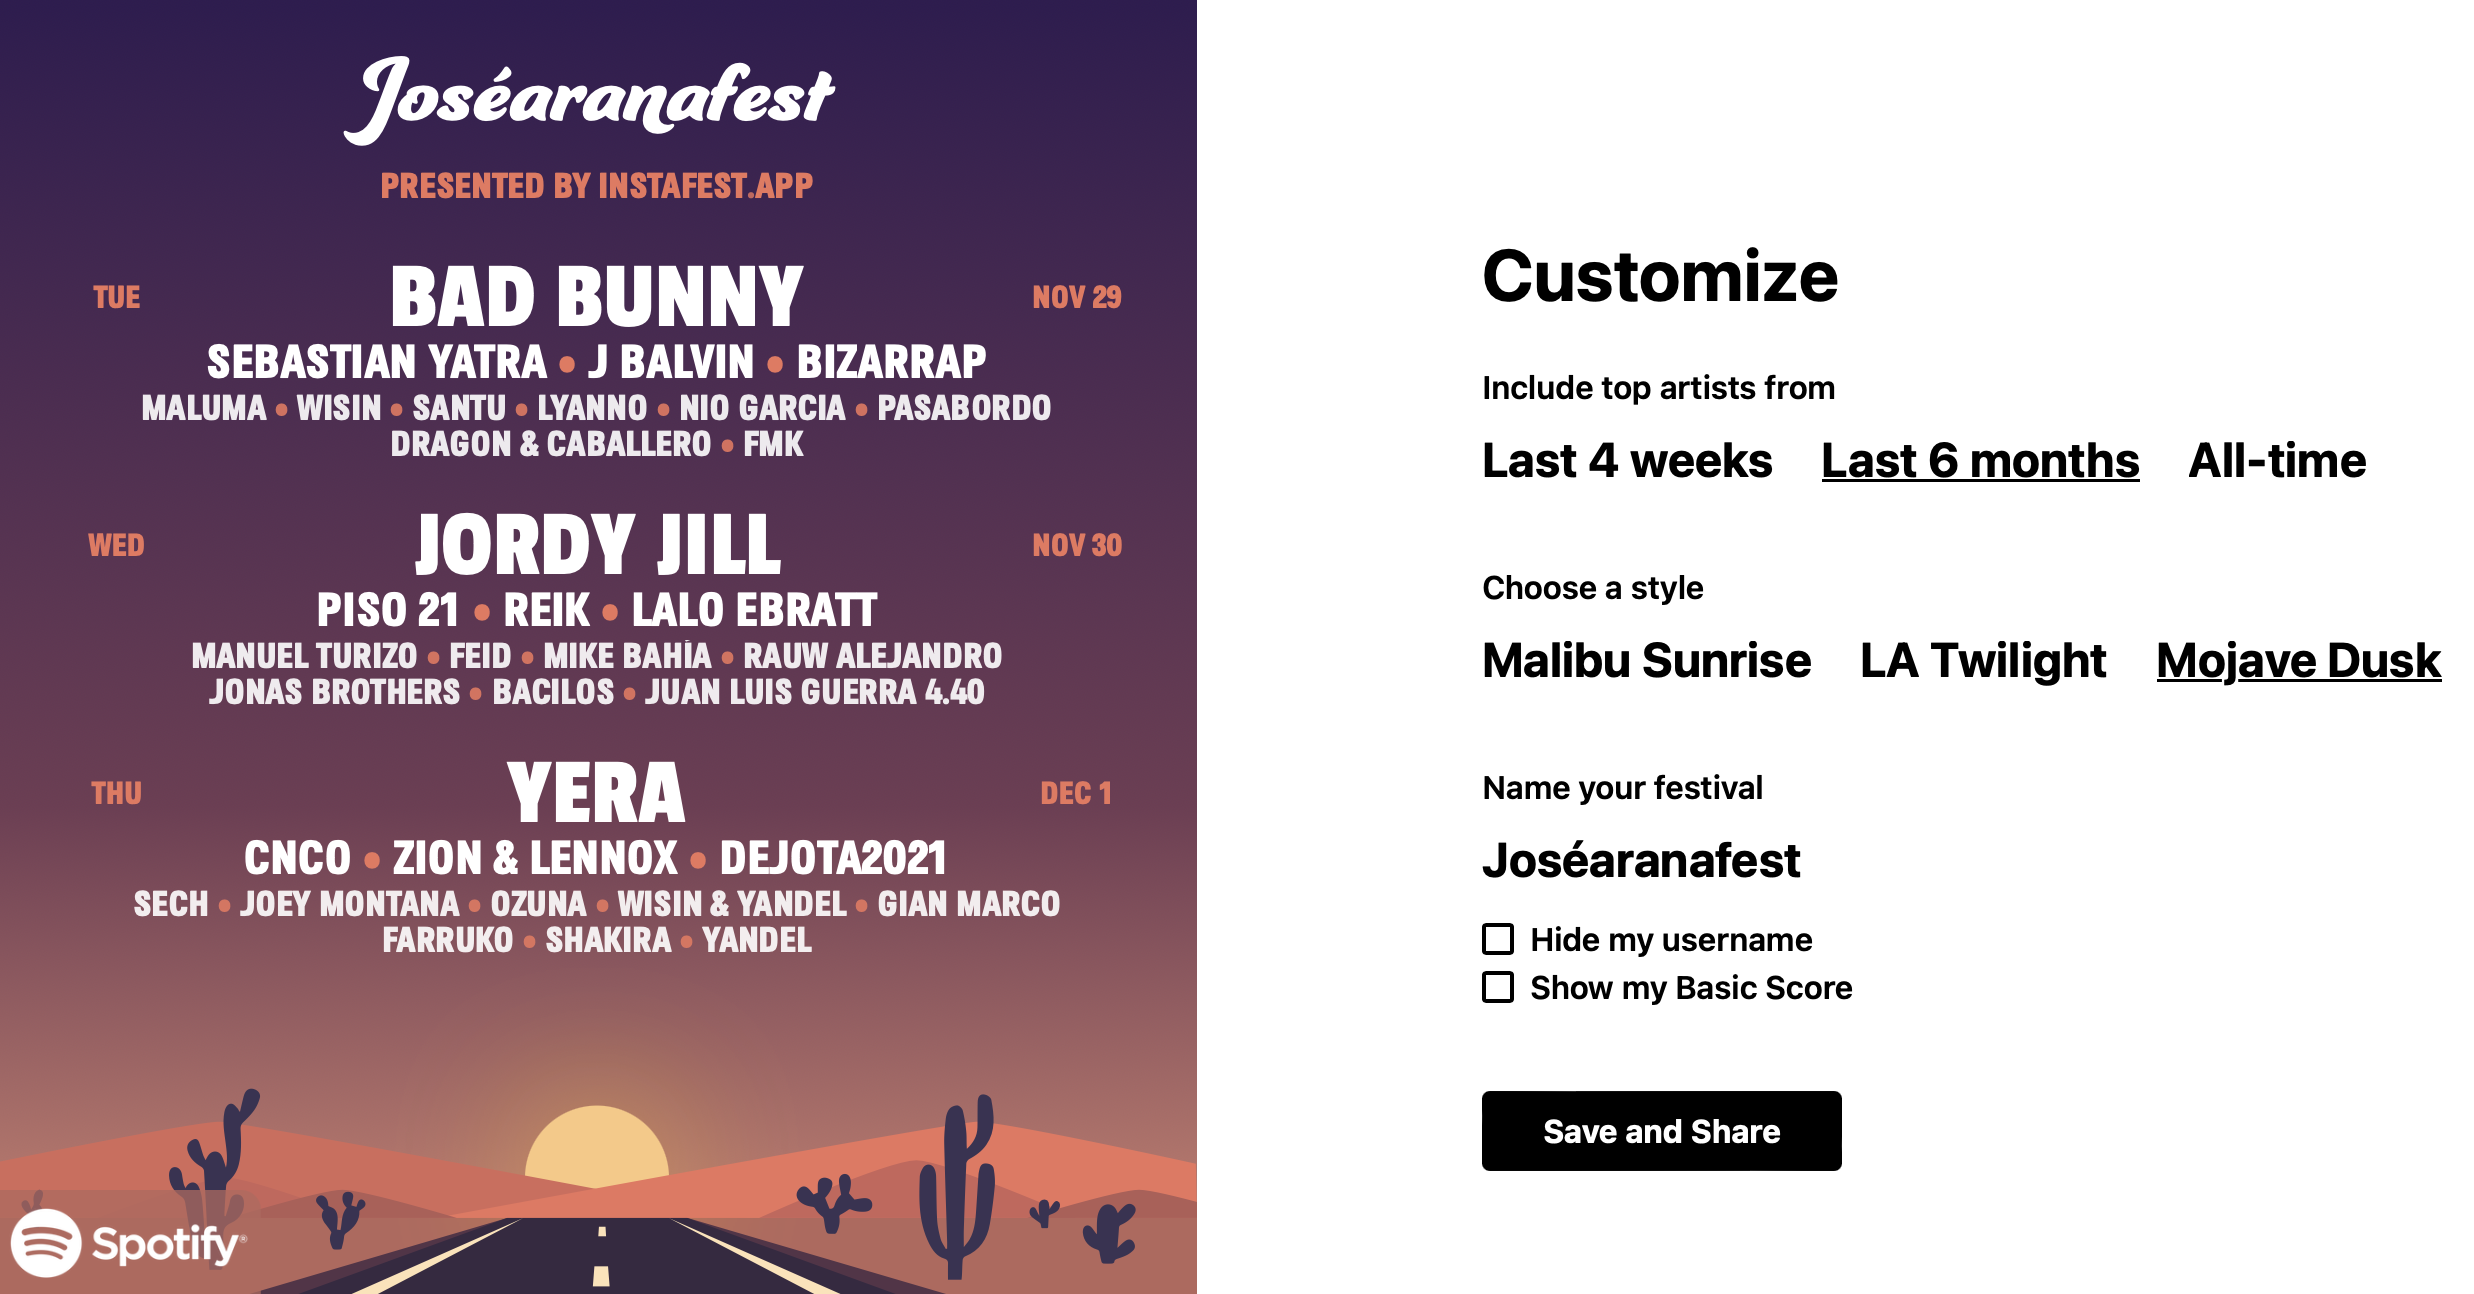 Esta web permite a cualquier persona crear un festival con las canciones más escuchadas de Spotify